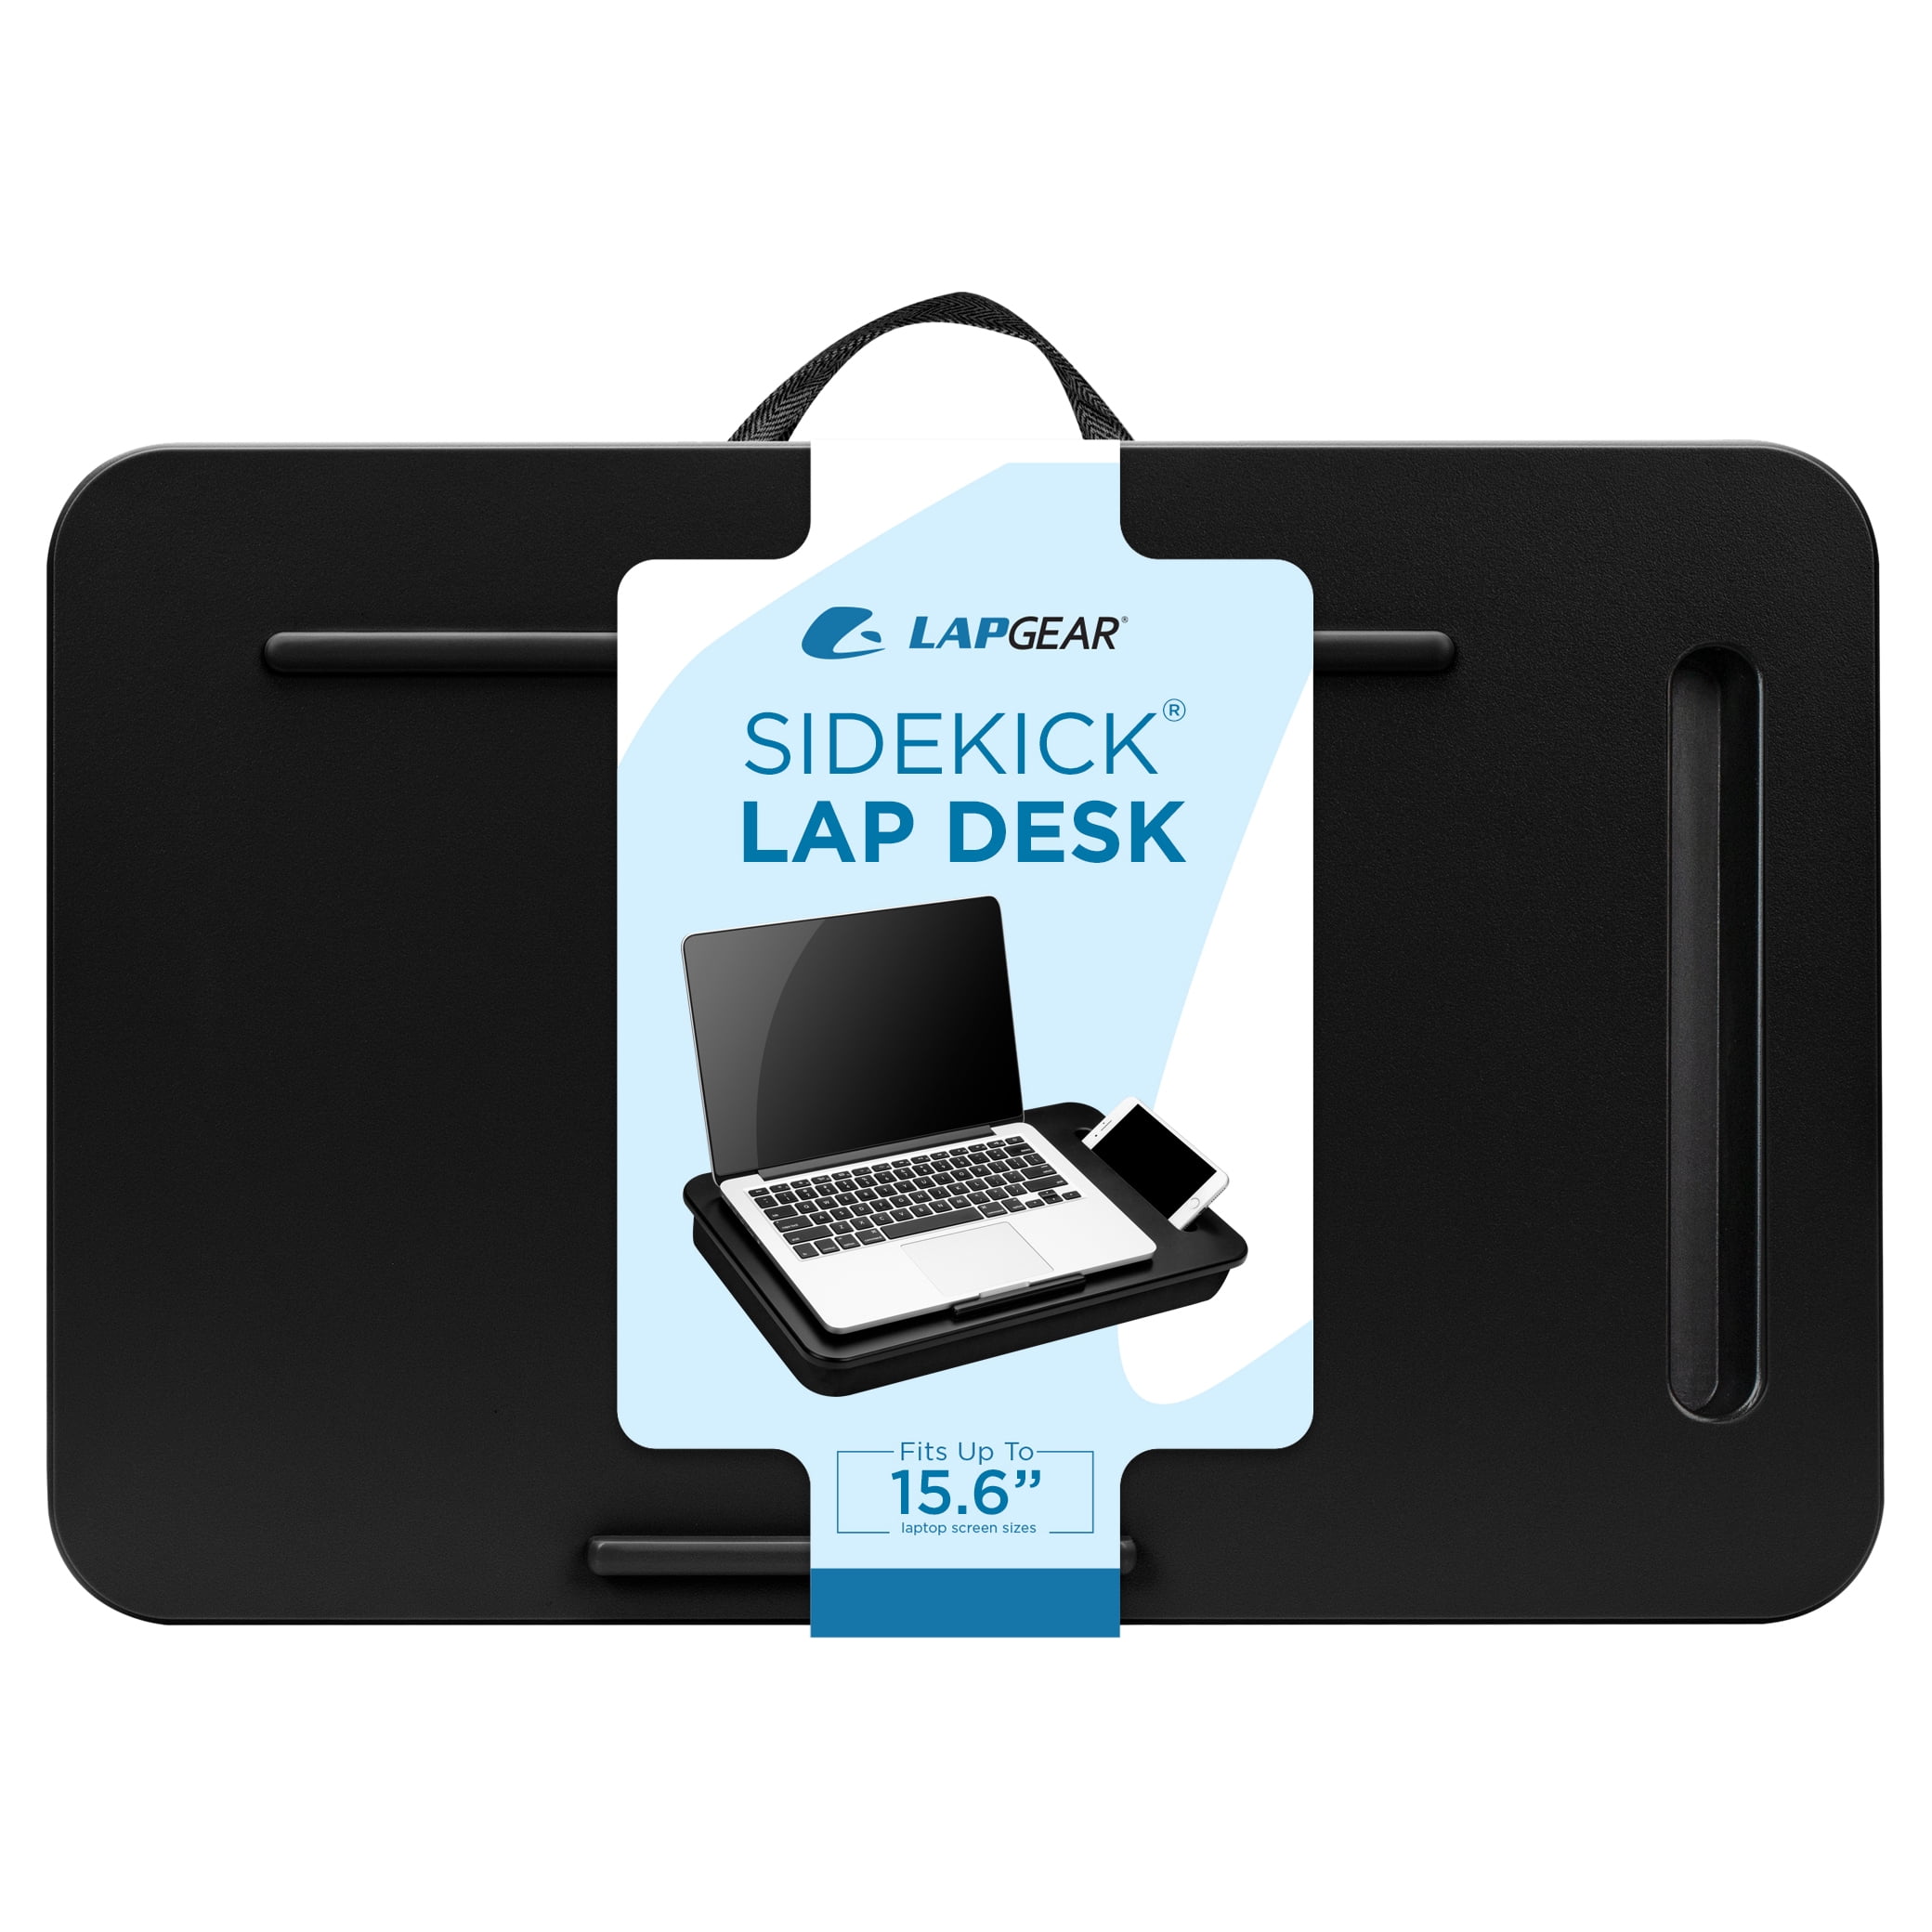 LapGear Sidekick Lap Desk for up to 15.6 Laptops, Black 